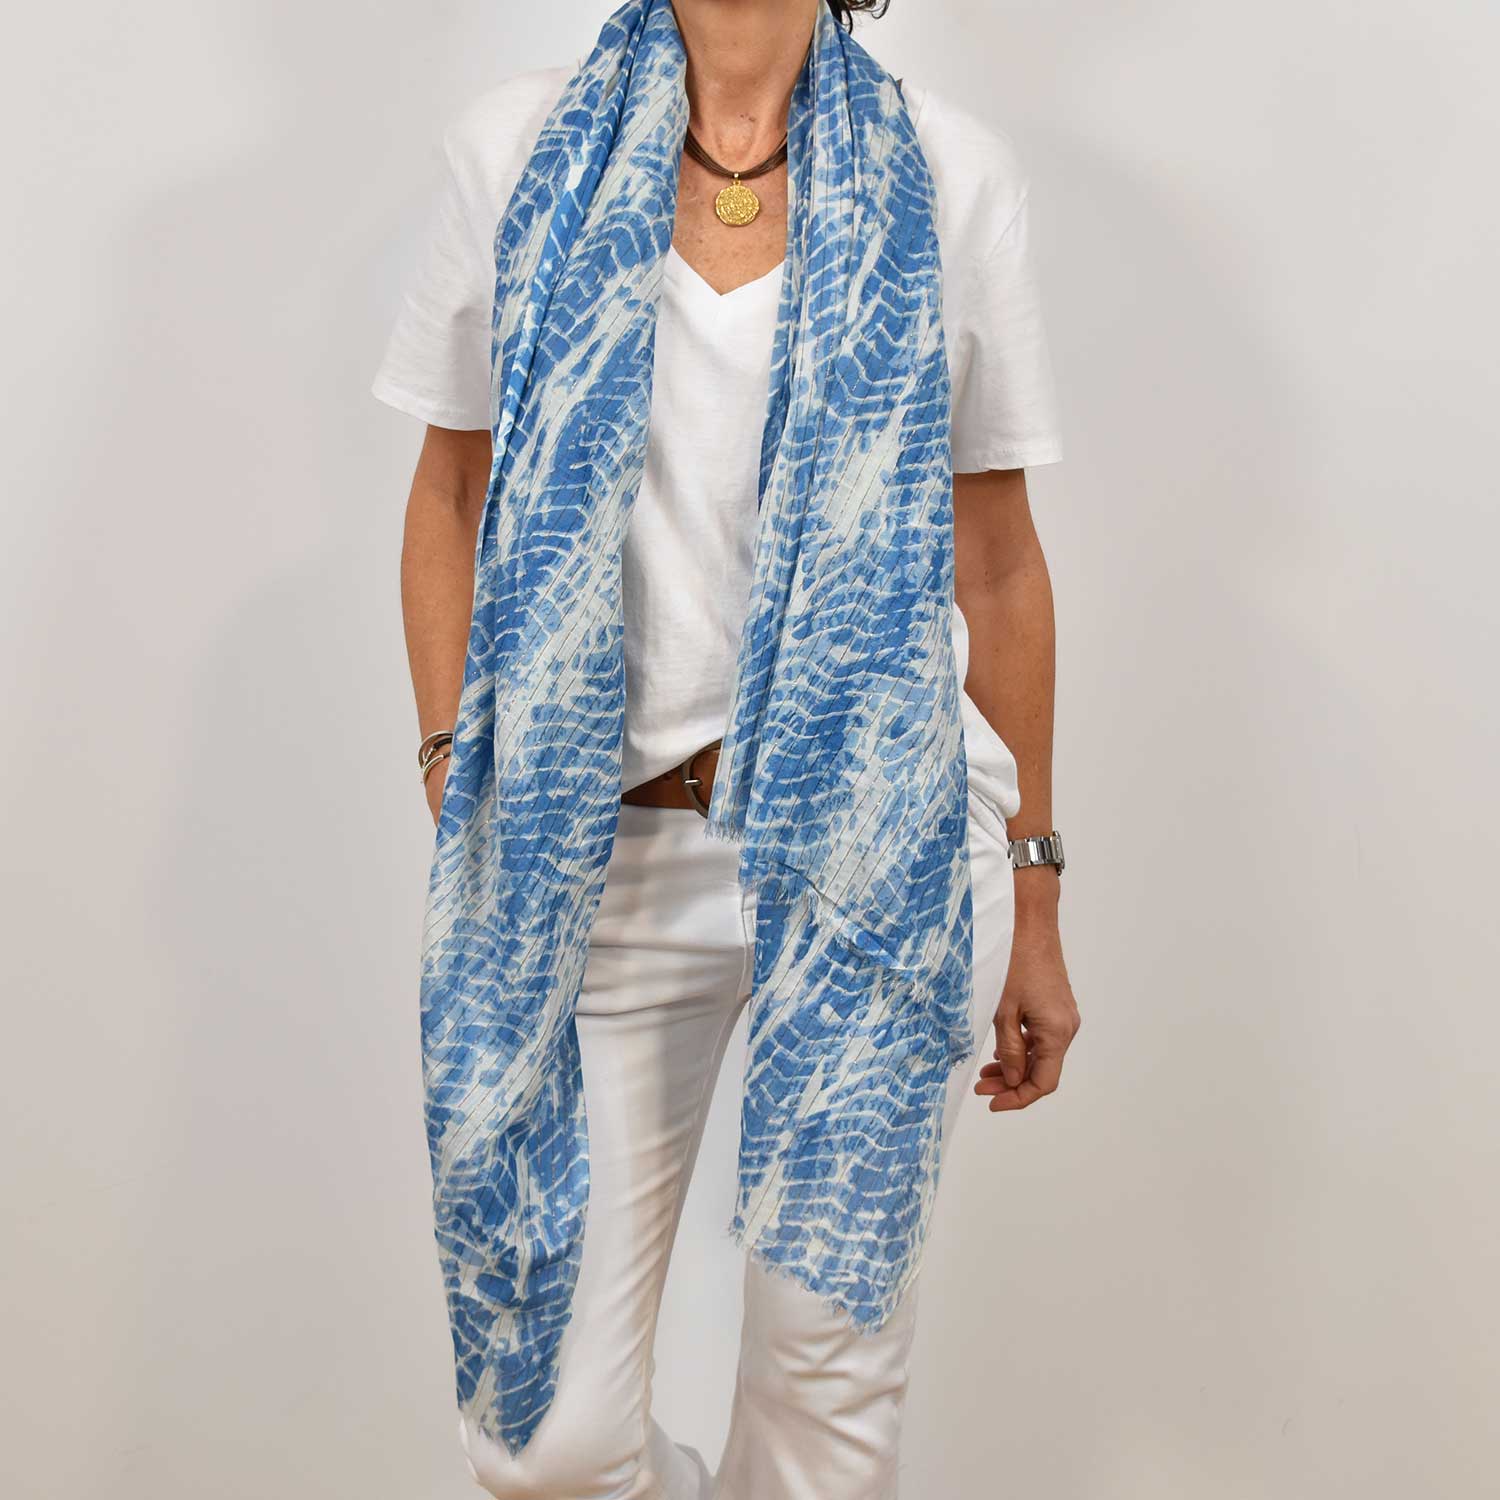 Blue shiny tie dye scarf